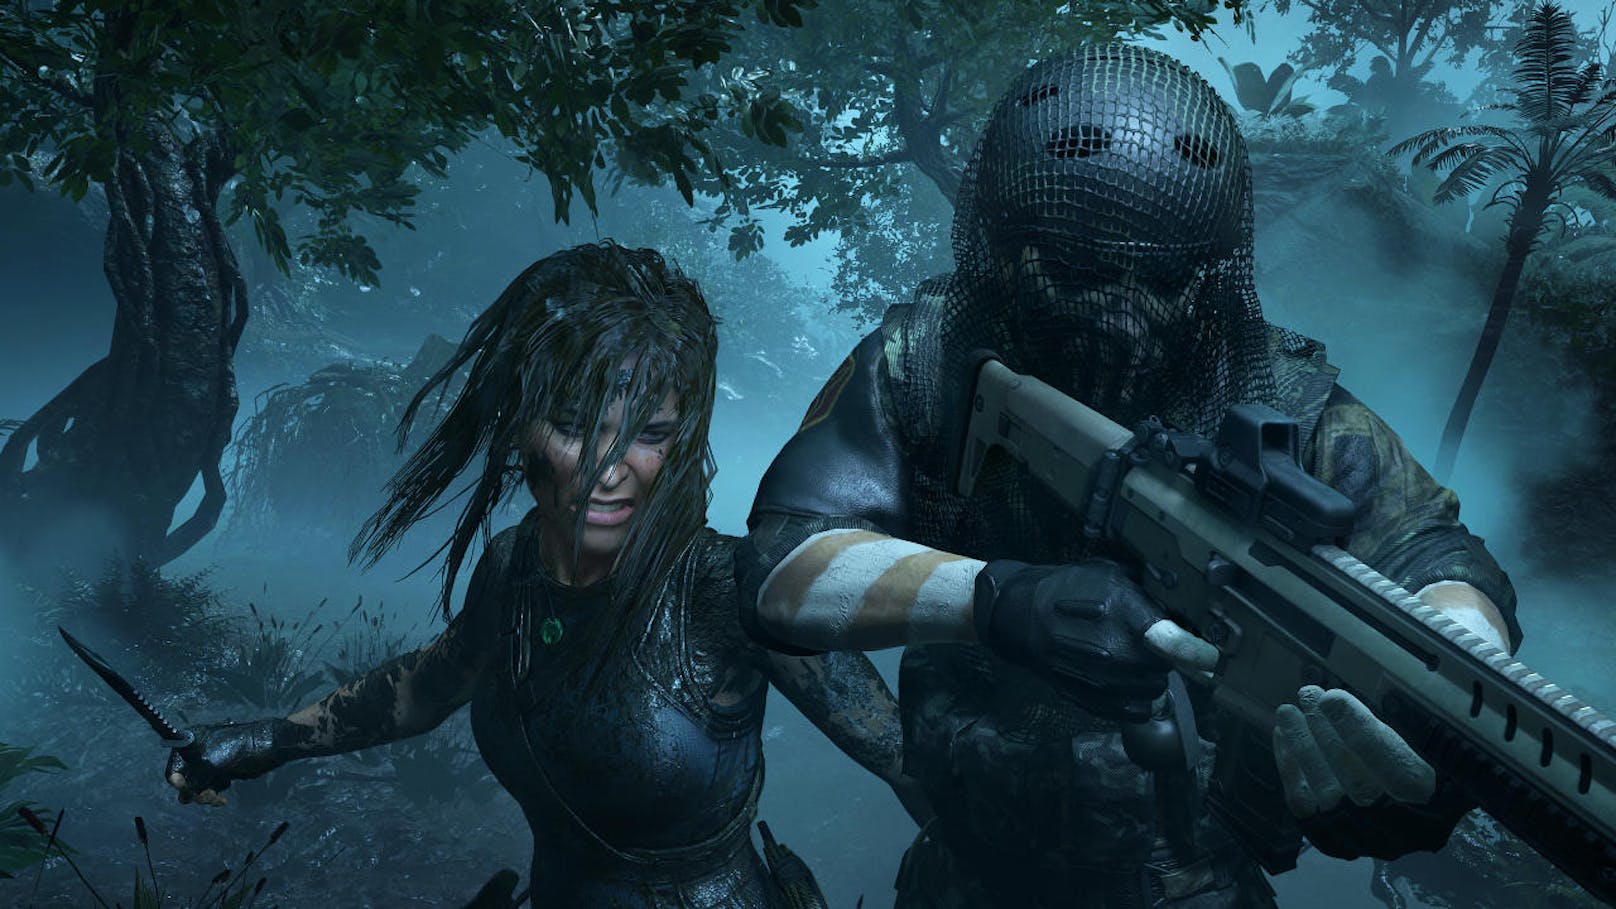  <a href="https://www.heute.at/digital/games/story/Shadow-of-the-Tomb-Raider-Test-Review-Die-Apokalypse-treibt-Lara-Croft-zu-Hoechstleistungen-56048332" target="_blank">Shadow of the Tomb Raider</a>